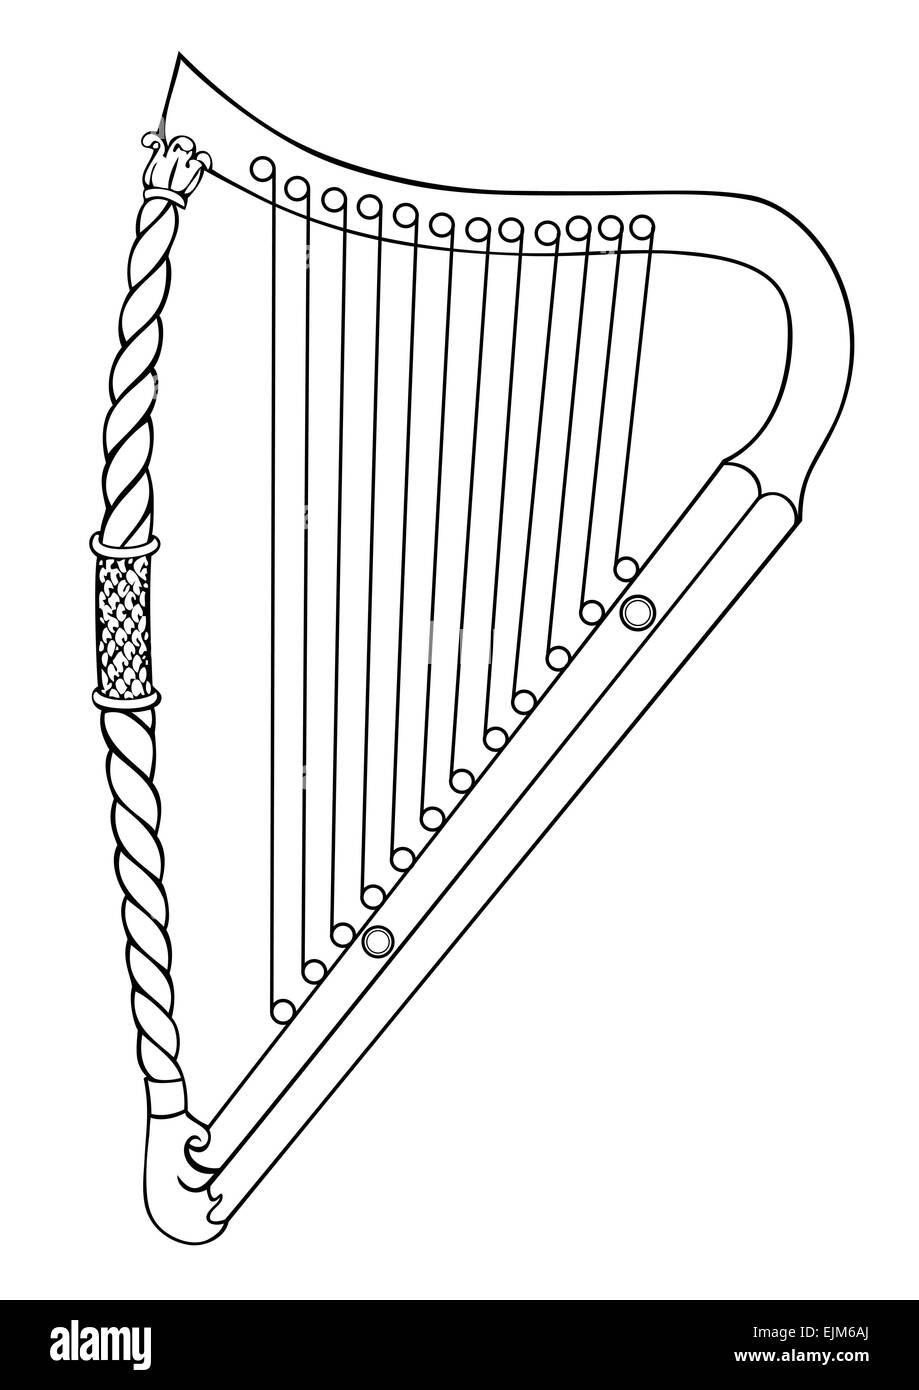 Abbildung der irischen Harfe aus 12. Jahrhundert - Vektor Stock Vektor